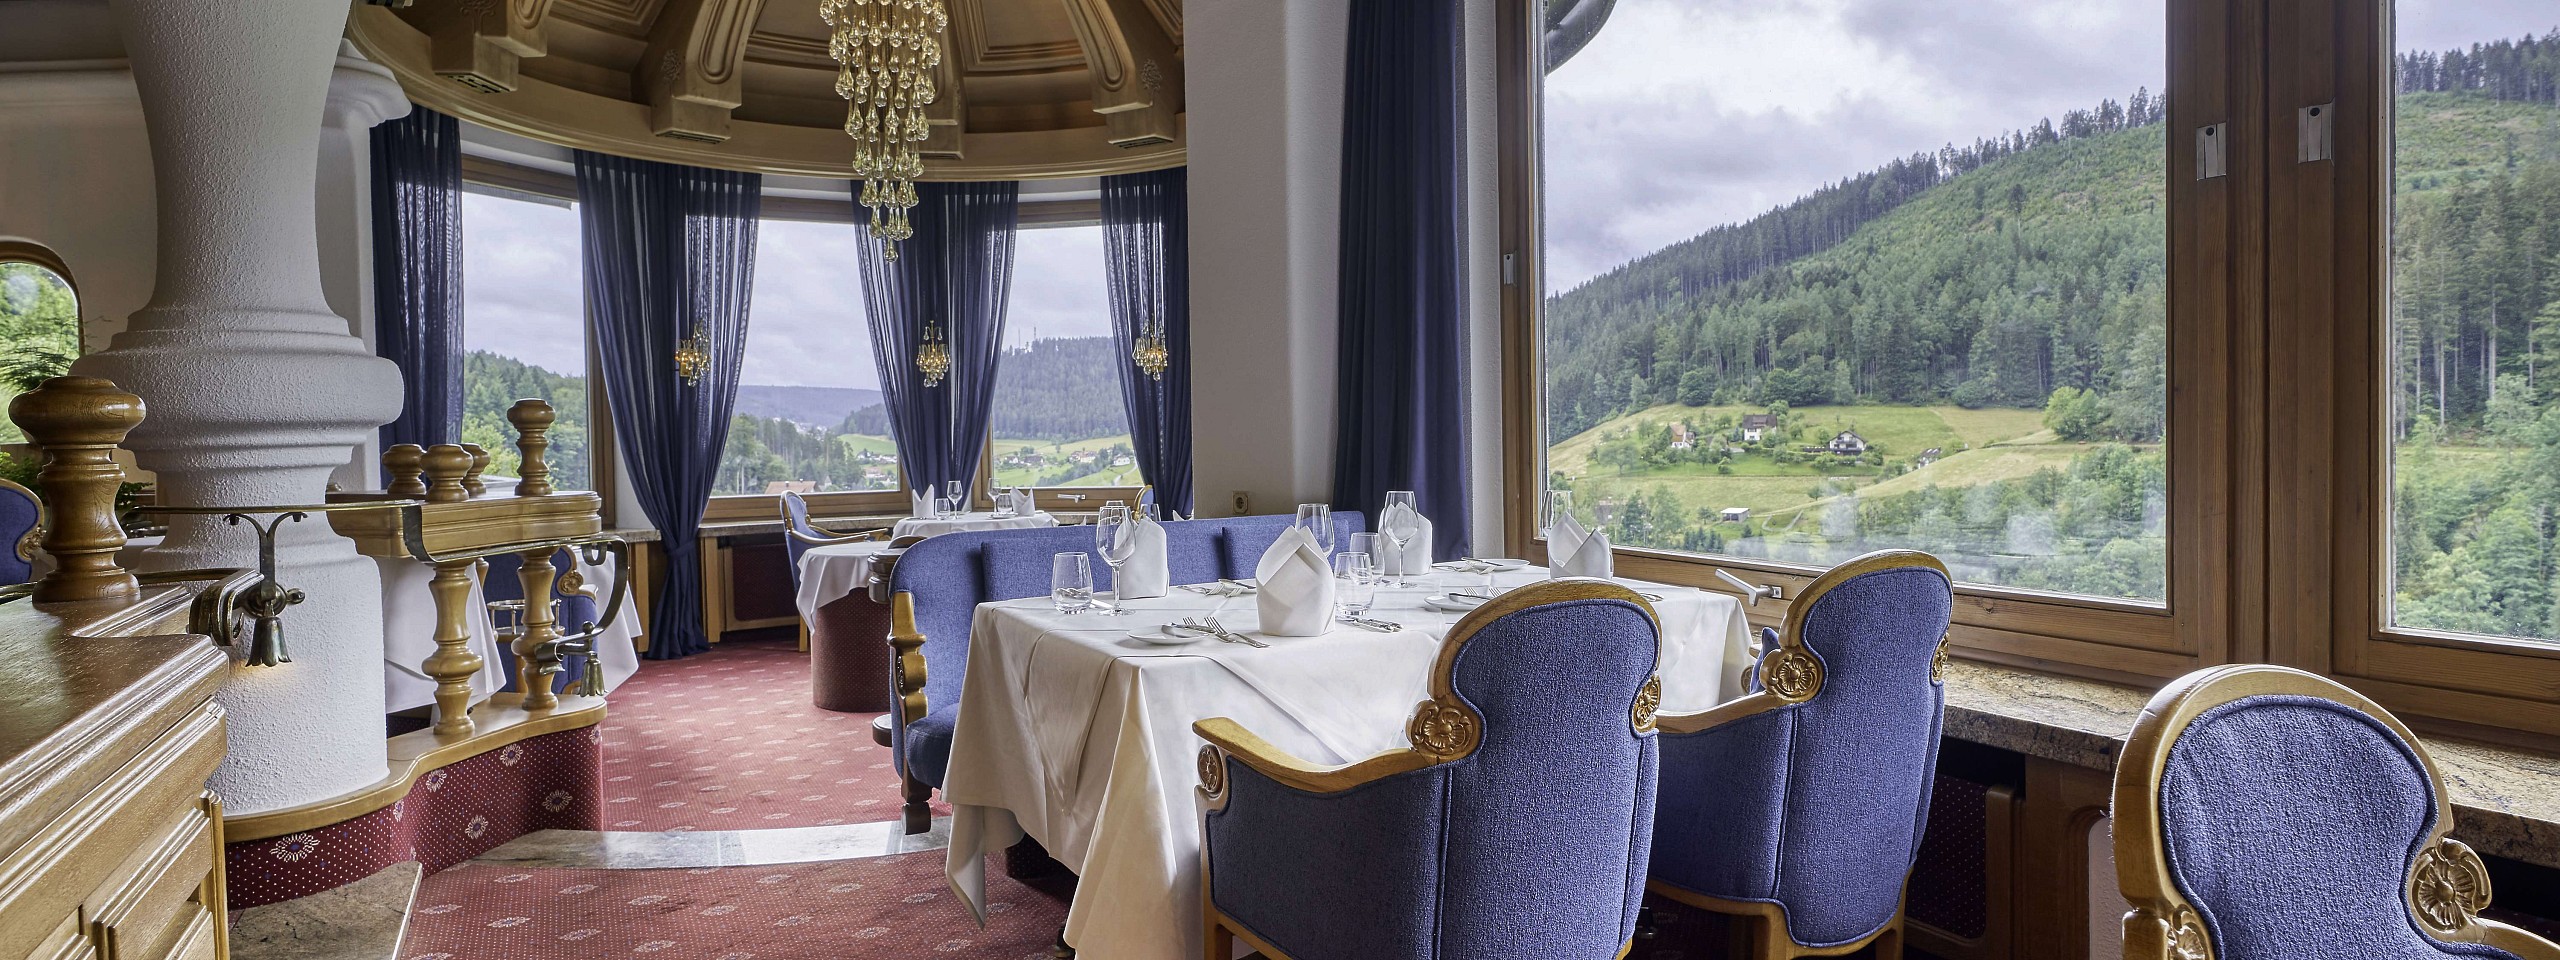 Das exquisite Restaurant Silberberg in der Eventlocation im Schwarzwald mit Blick auf die Berge.